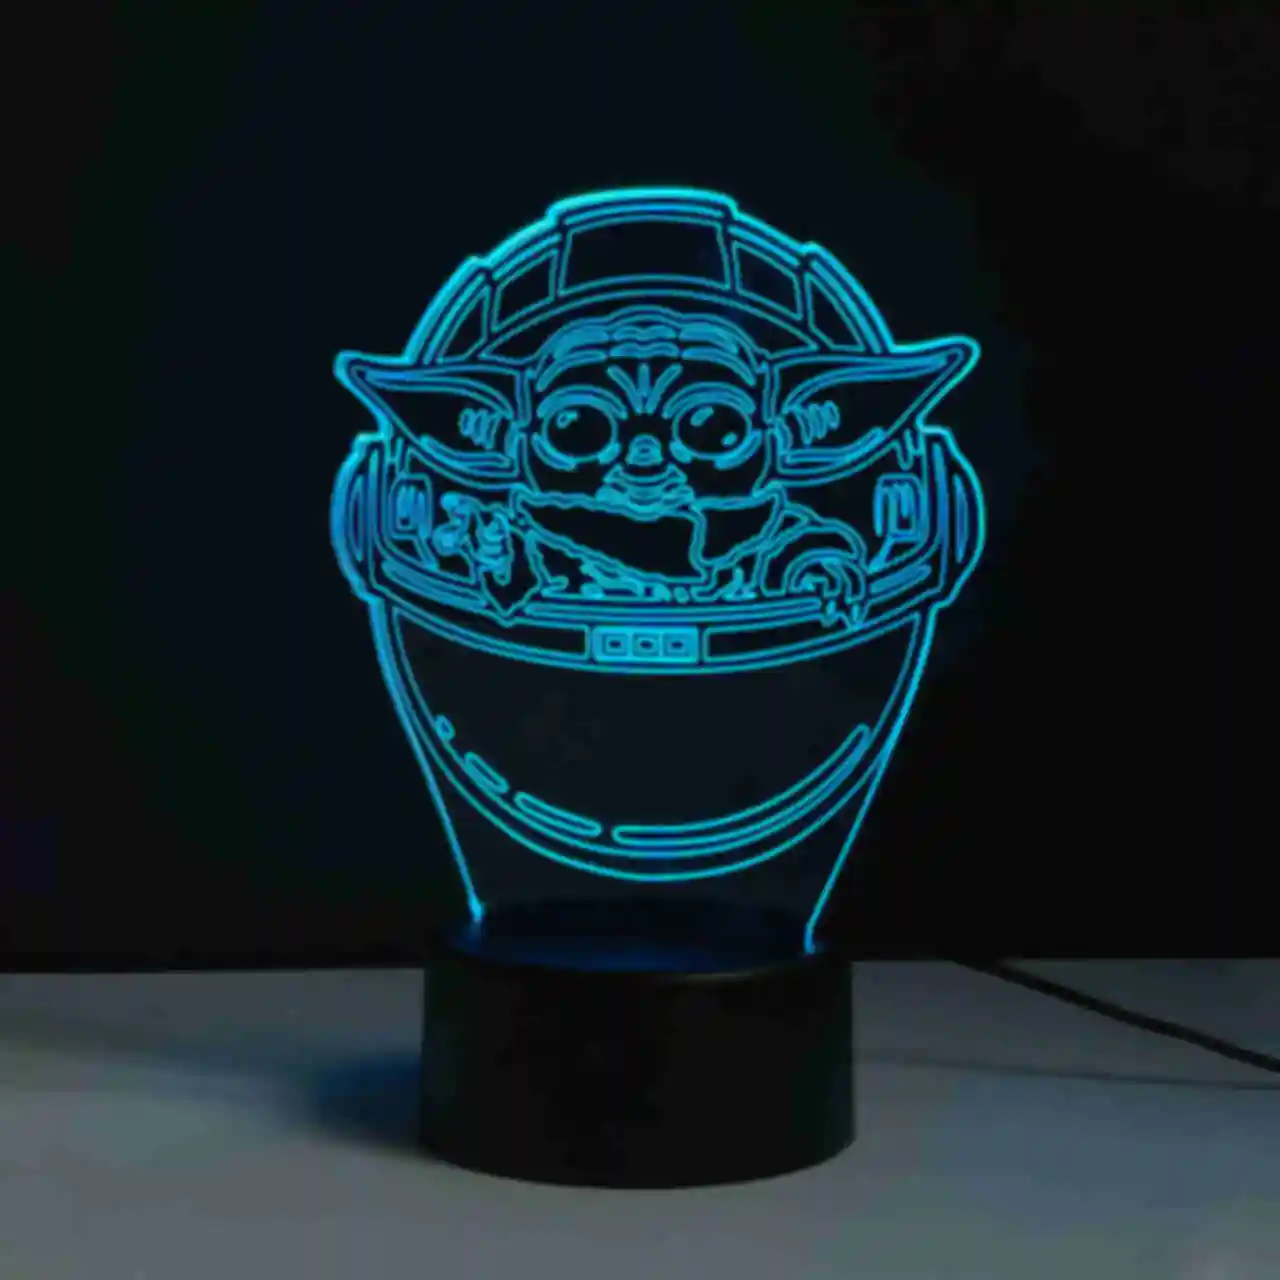 Светильник Baby Yoda ⦁ Лампа с малышом Грогу ⦁ Сувениры и аксессуары Star Wars и Mandalorian ⦁ Подарок Звездные Войны и Мандалорец. Фото №7